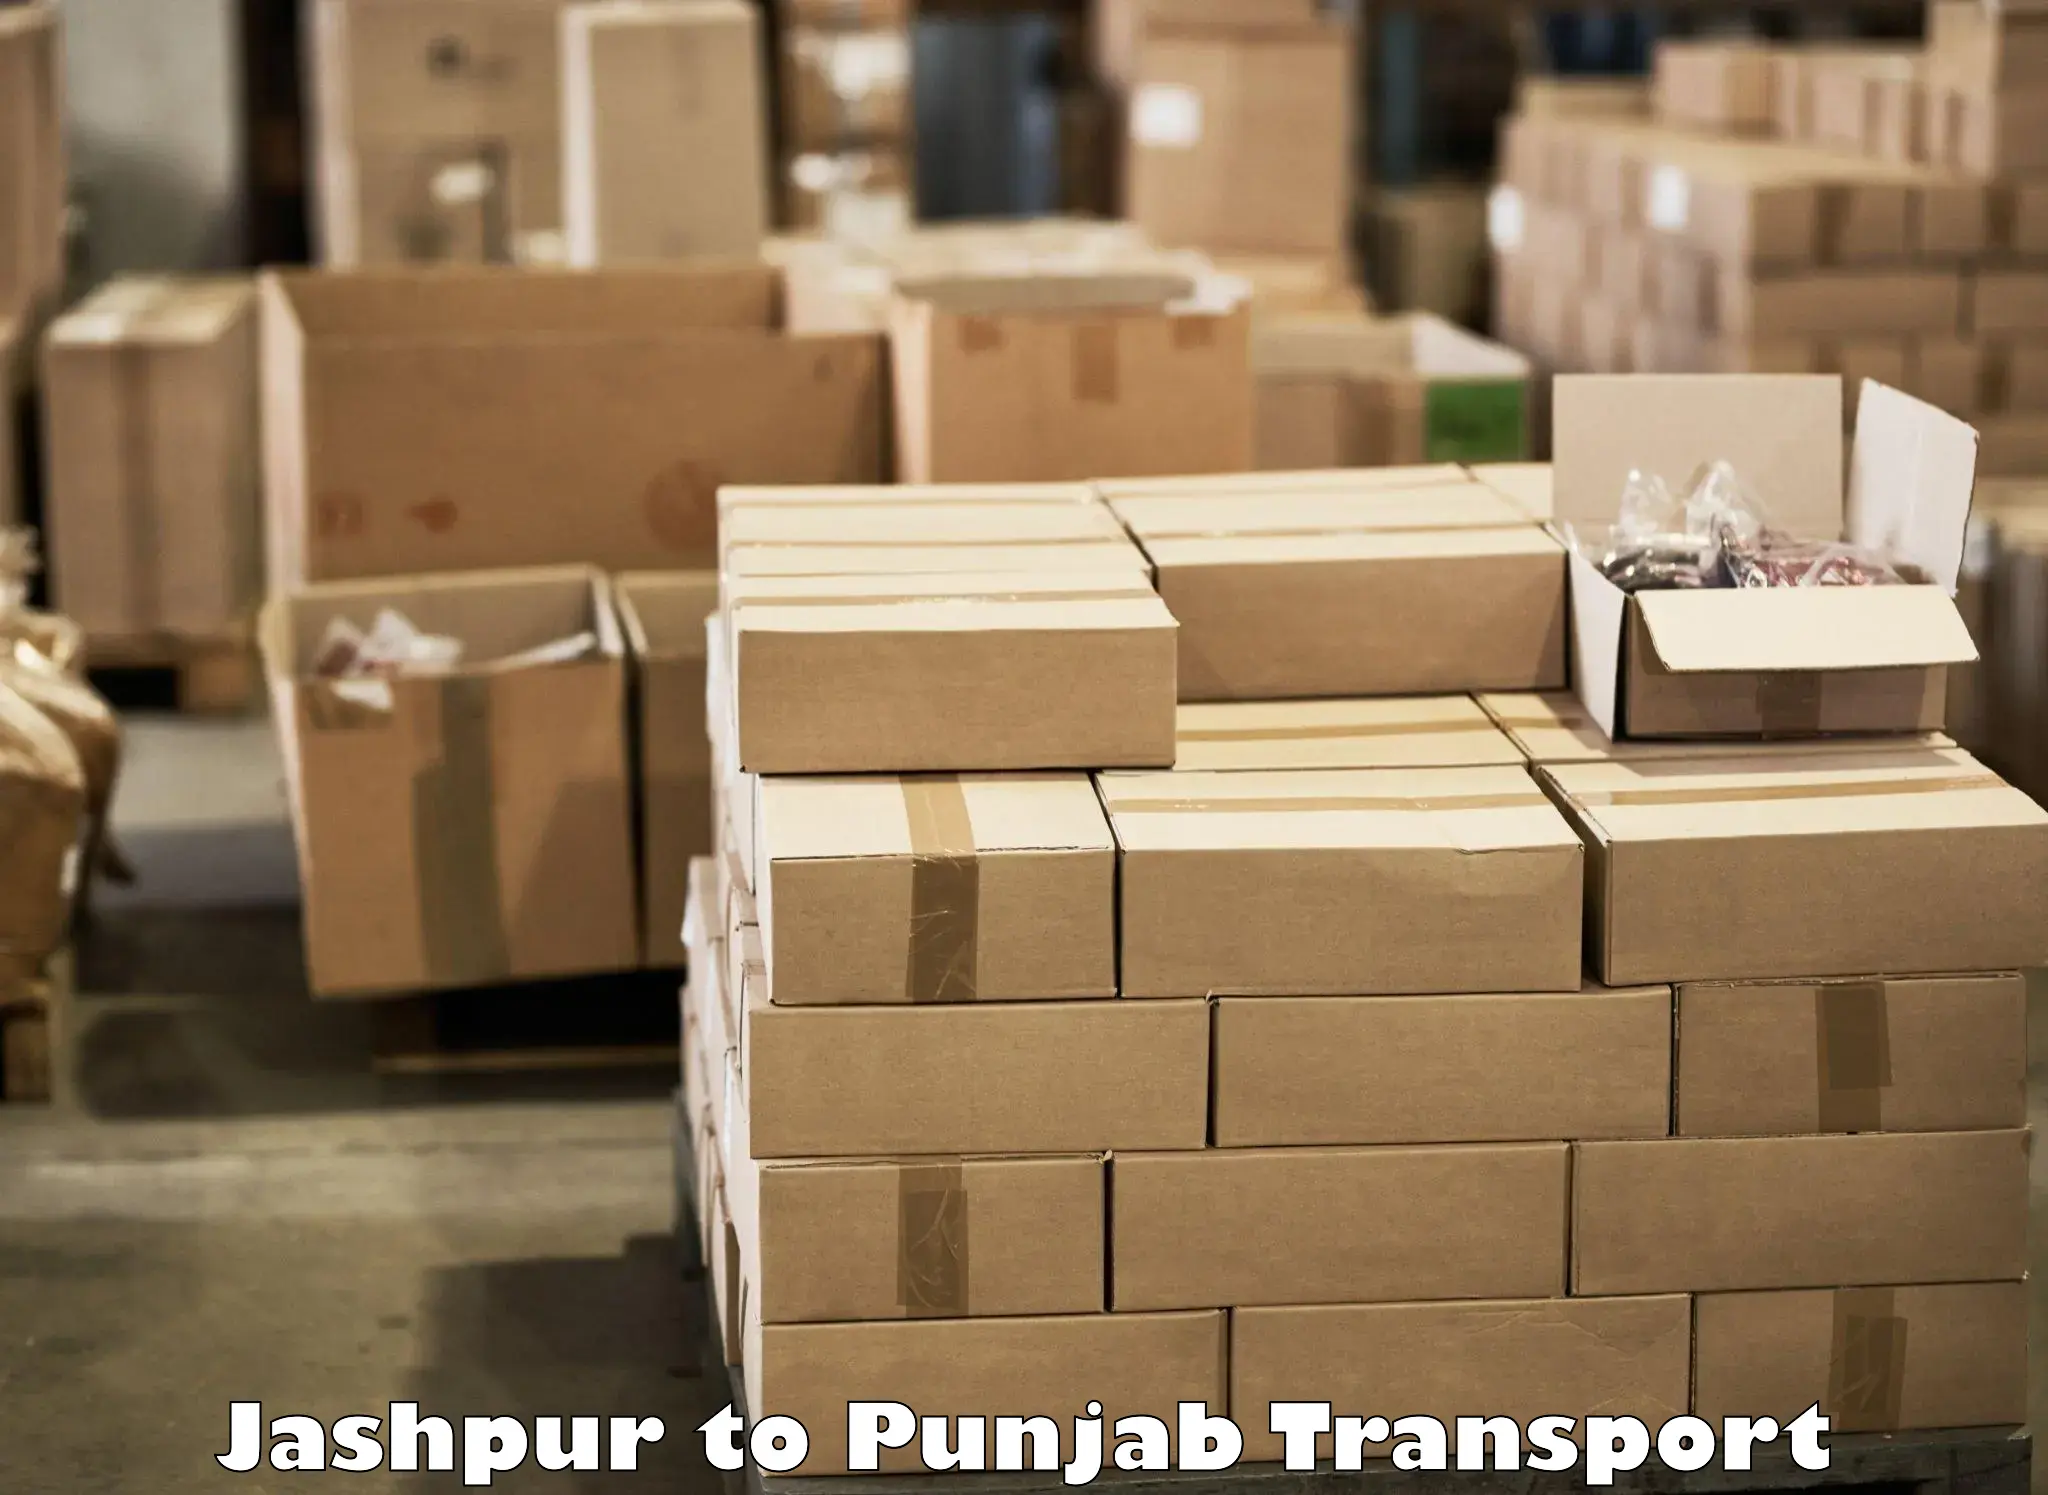 Online transport service Jashpur to Sirhind Fatehgarh